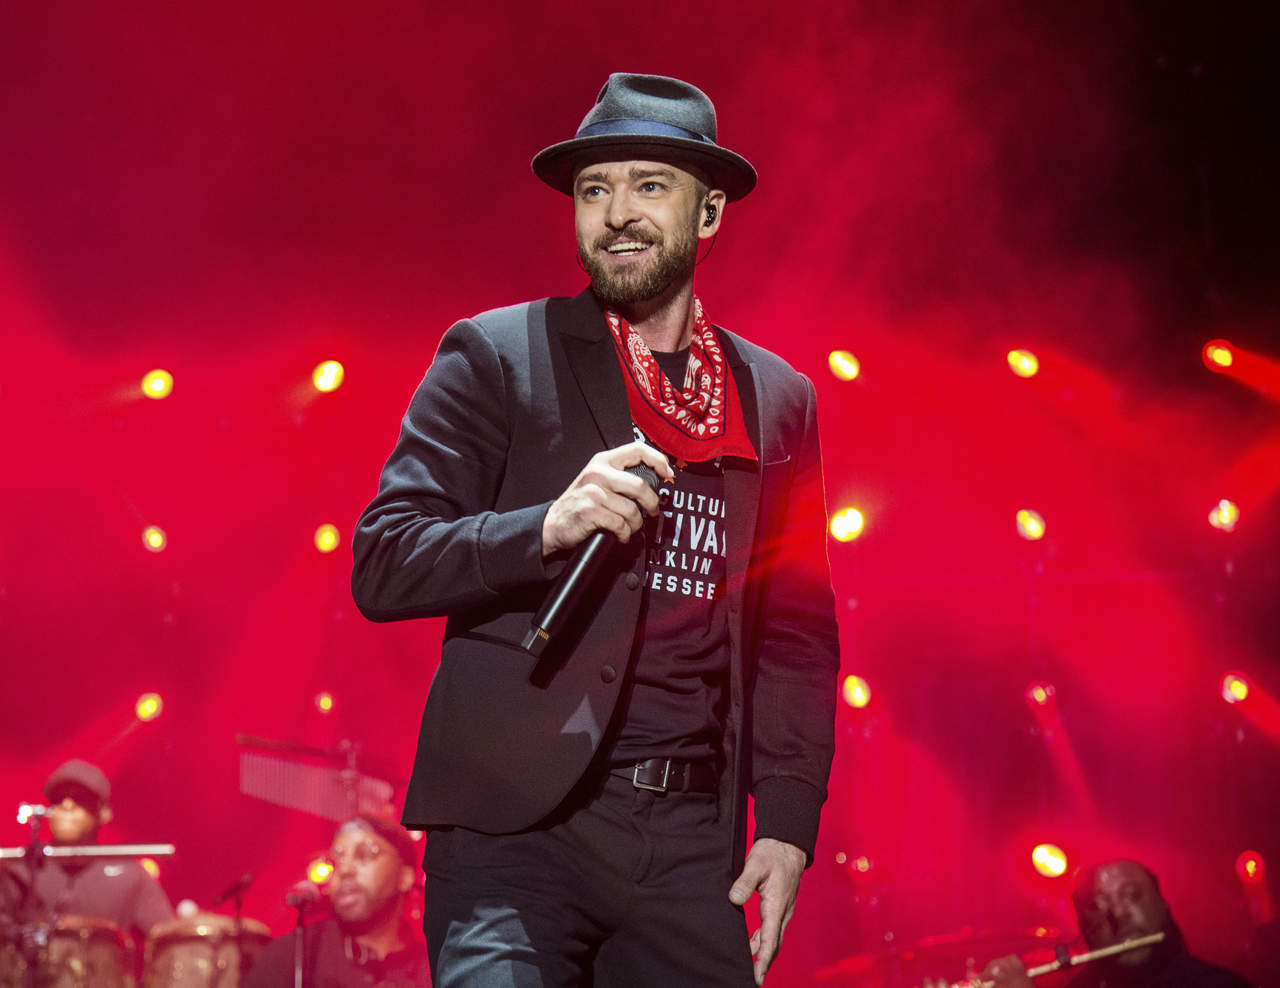 El show de medio tiempo durante el Super Bowl, en esta ocasión se prepara un espectáculo musical a cargo del cantante estadounidense Justin Timberlake. (AP)